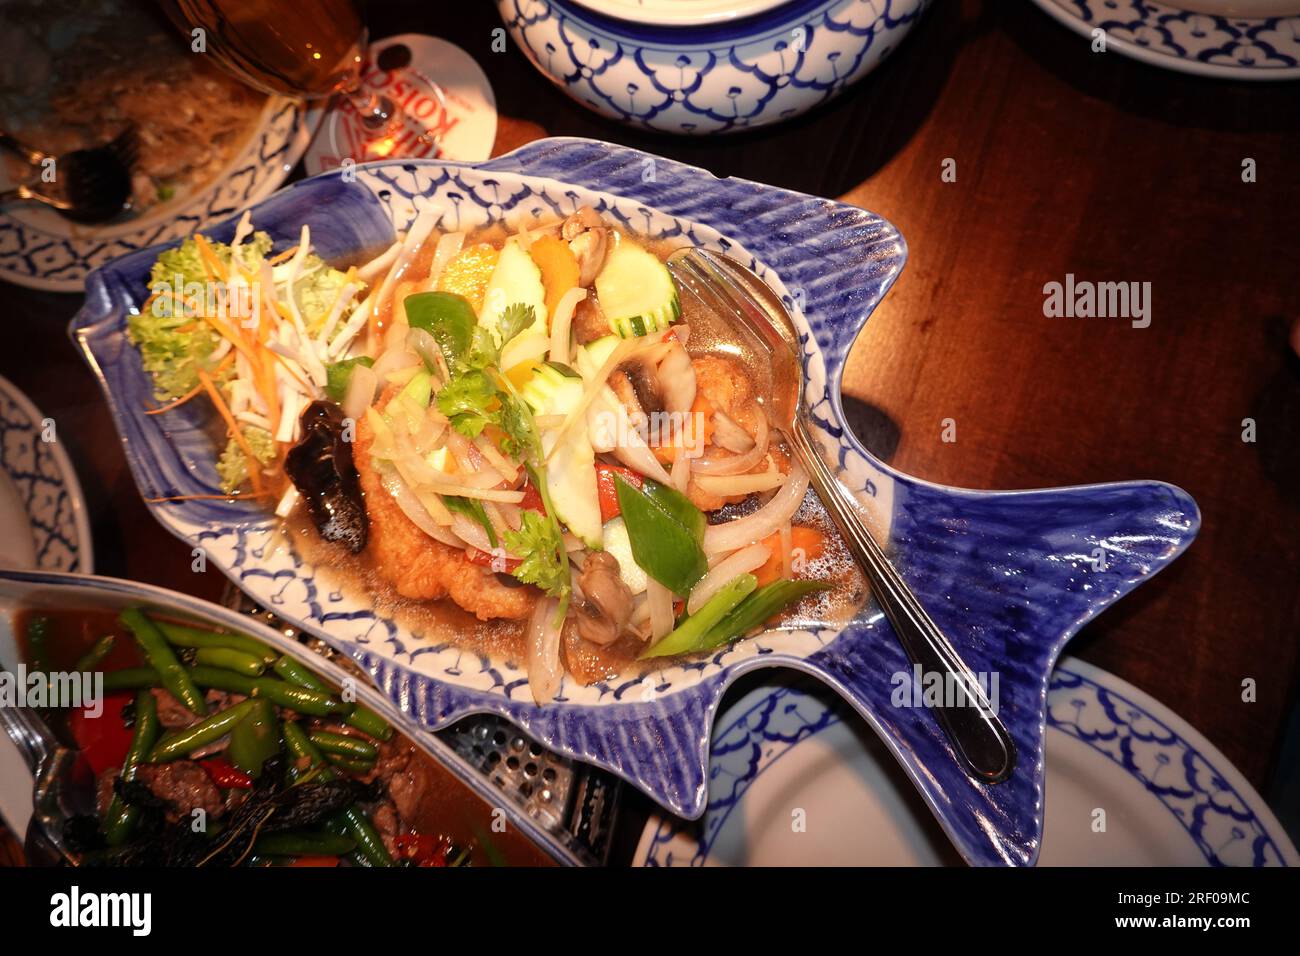 Rotbarsch-Filet auf thailändische Art, serviert in fischförmigen Teller Foto Stock